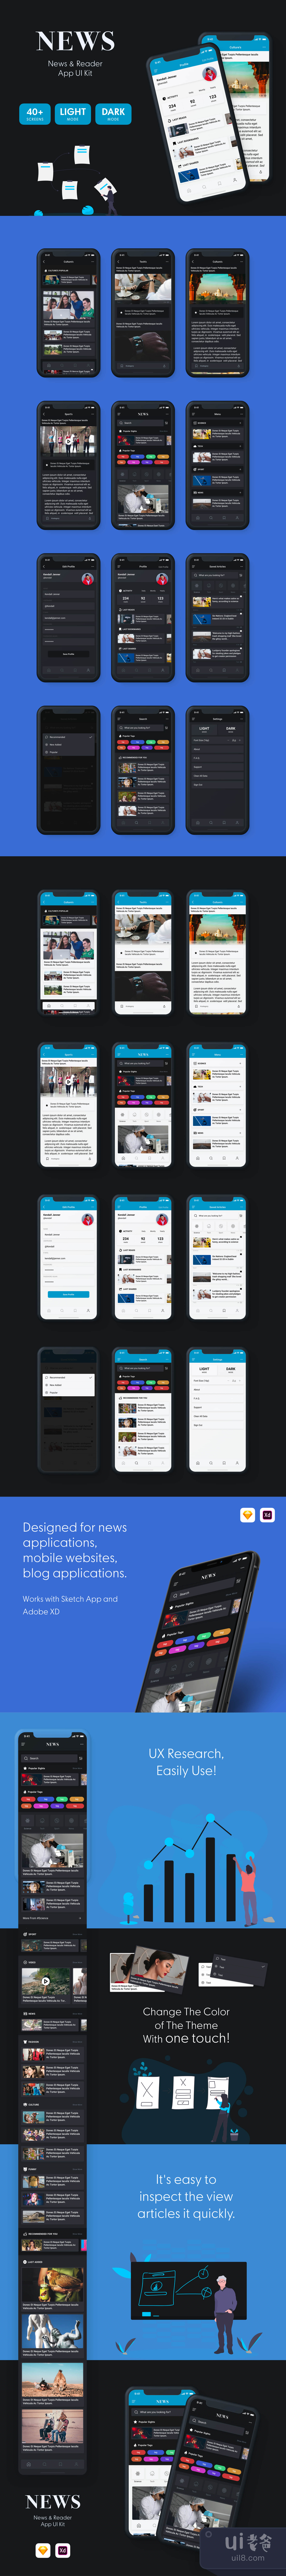 新闻阅读器移动应用UI包 (News  Reader Mobile App UI Kit)插图